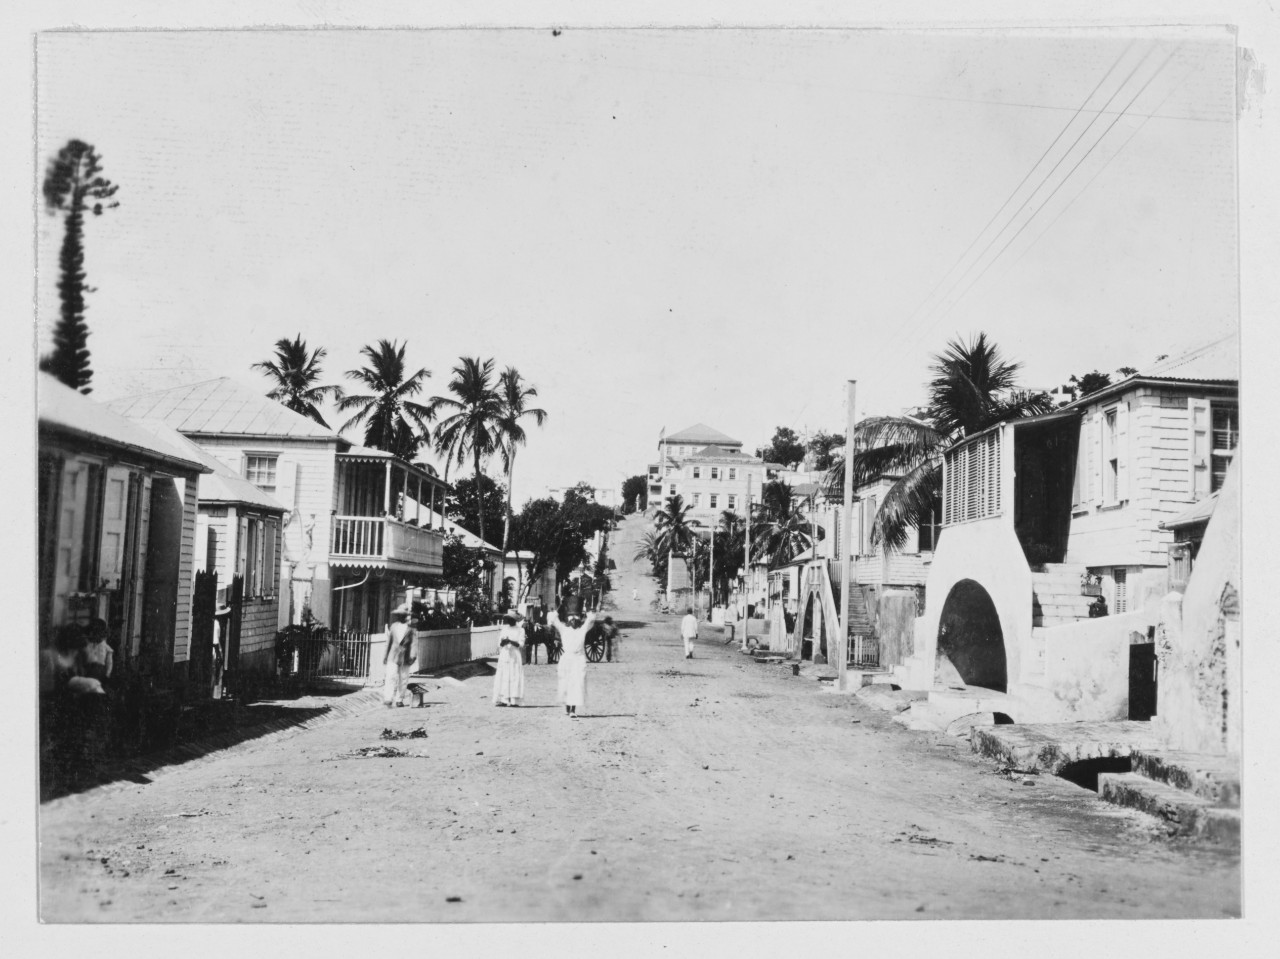 Street scene in St.Thomas